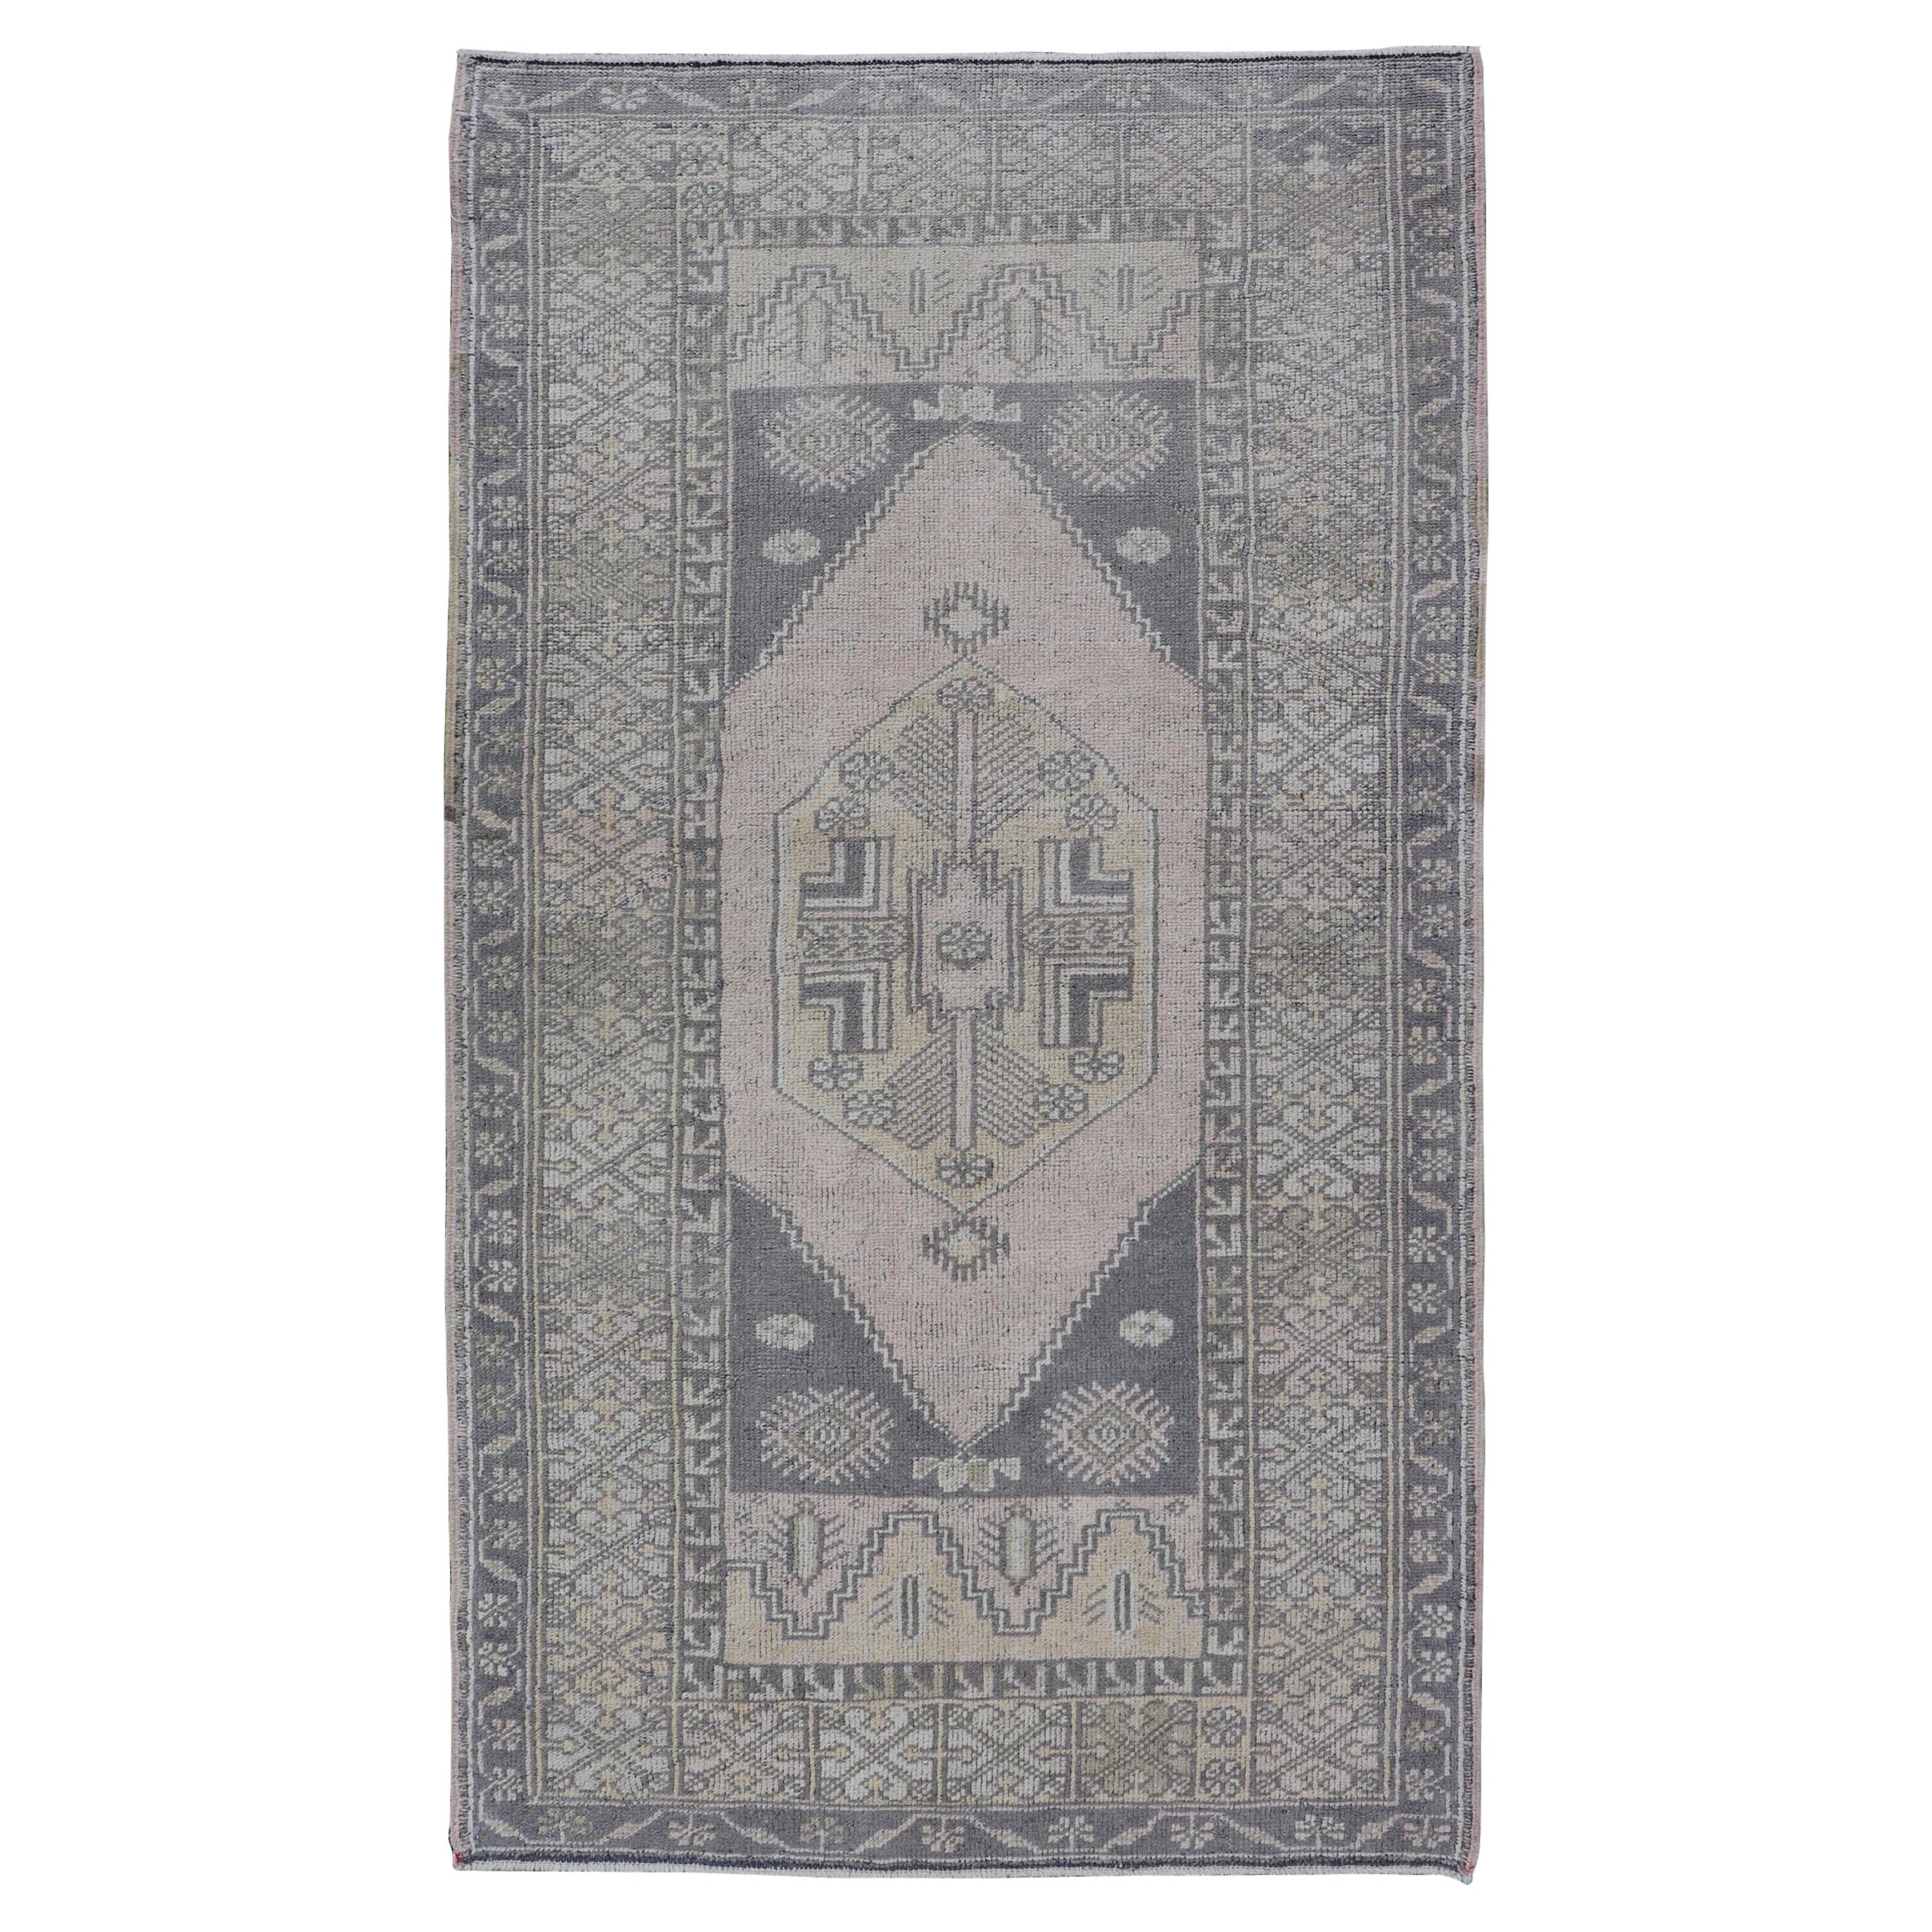 Türkischer Oushak-Teppich im Vintage-Stil in gedecktem Taupe, Grau, Creme und Blush